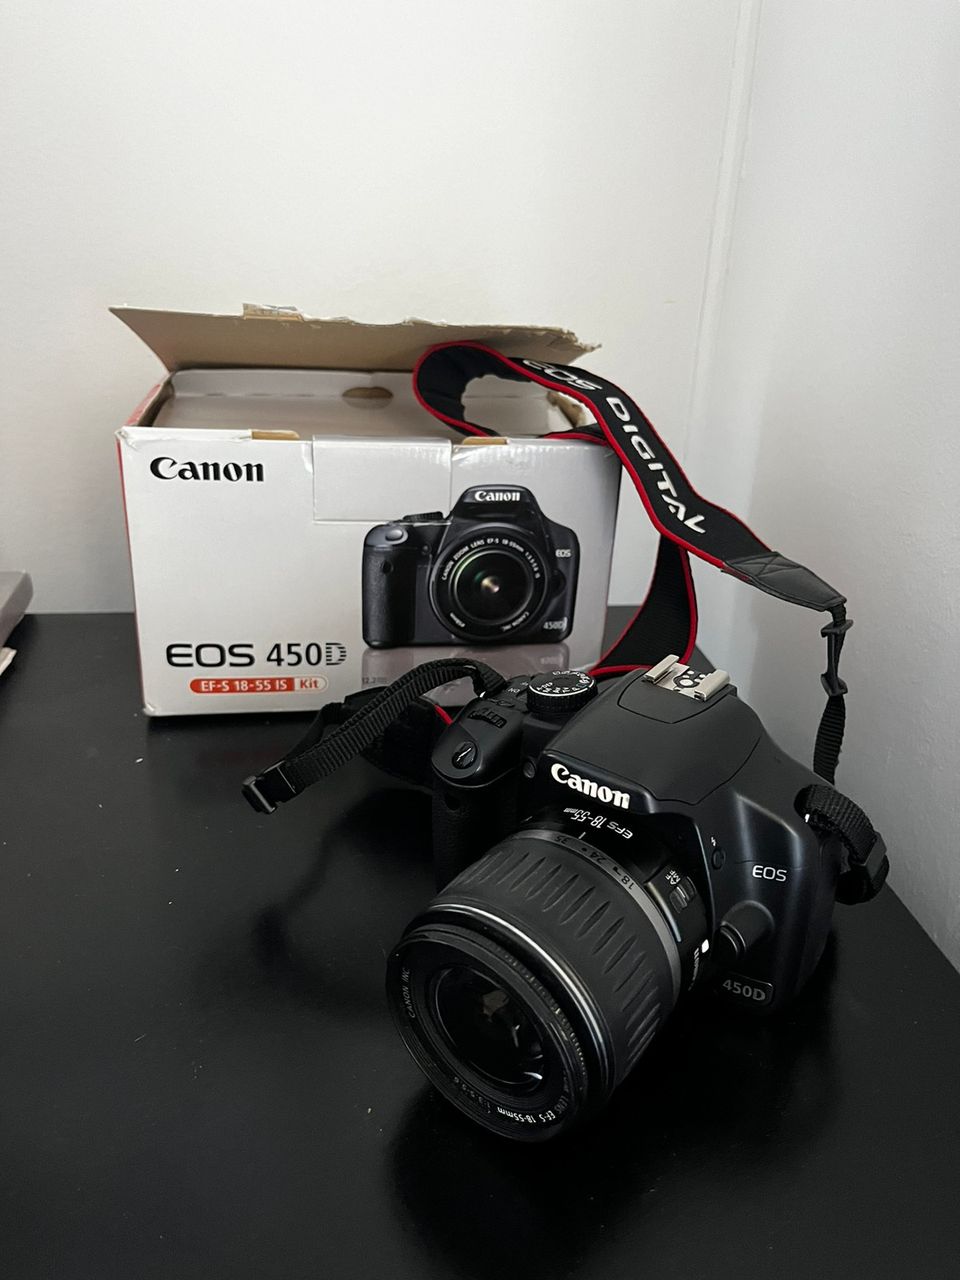 Canon EOS 450D kamera, Speedlite 420ex ja muuta kameran pikkutavaraa